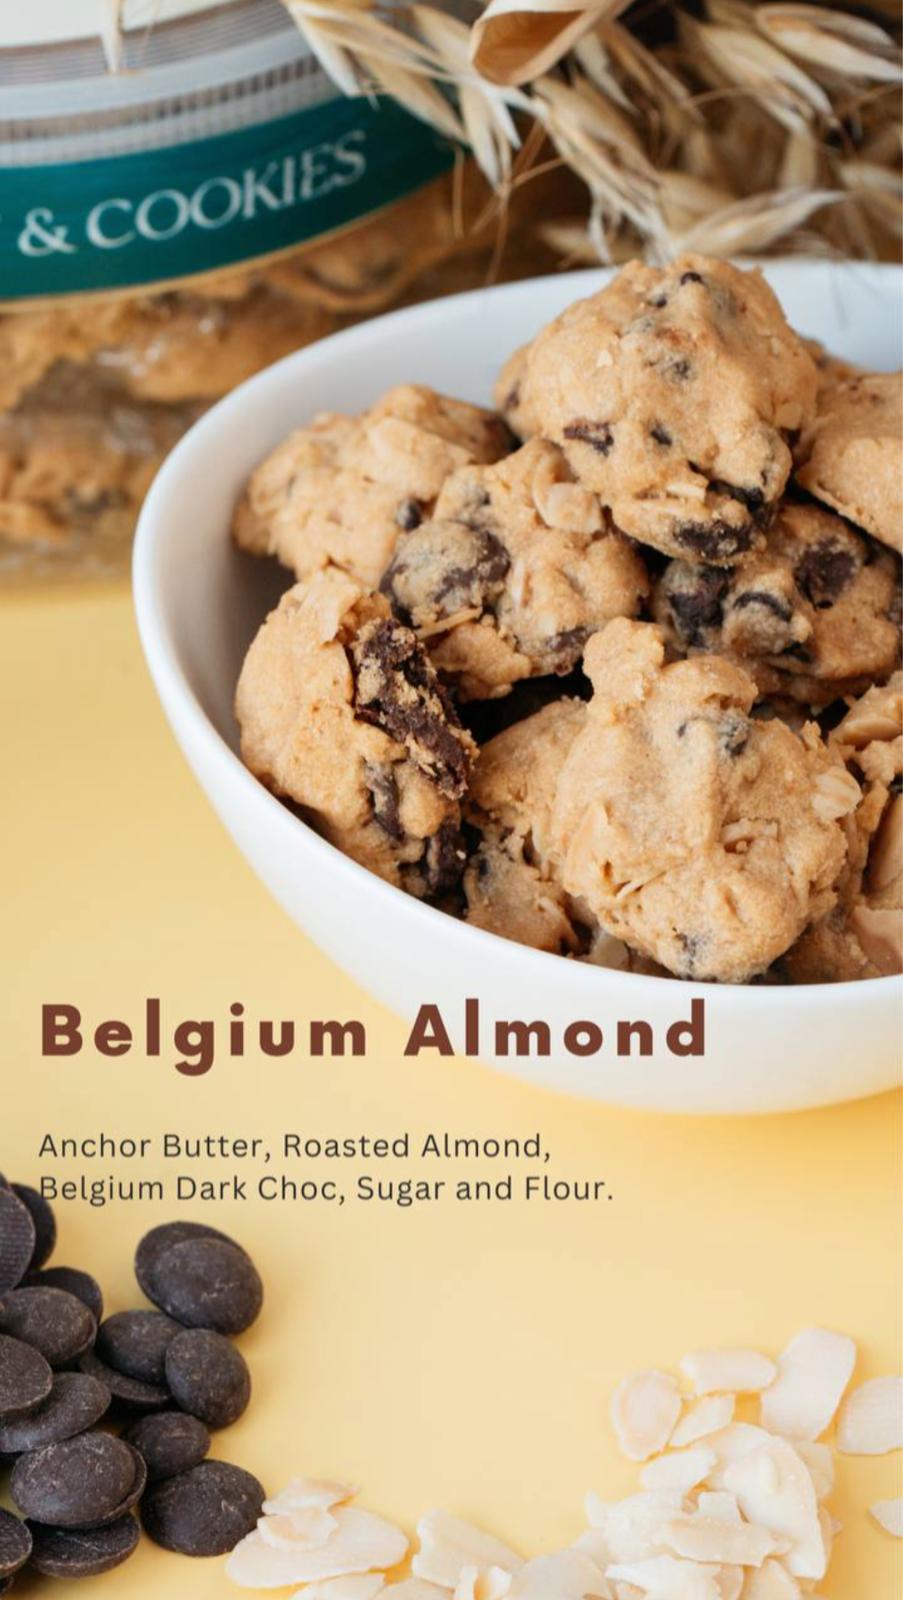 SR Tart & Cookies : Belgium Almond